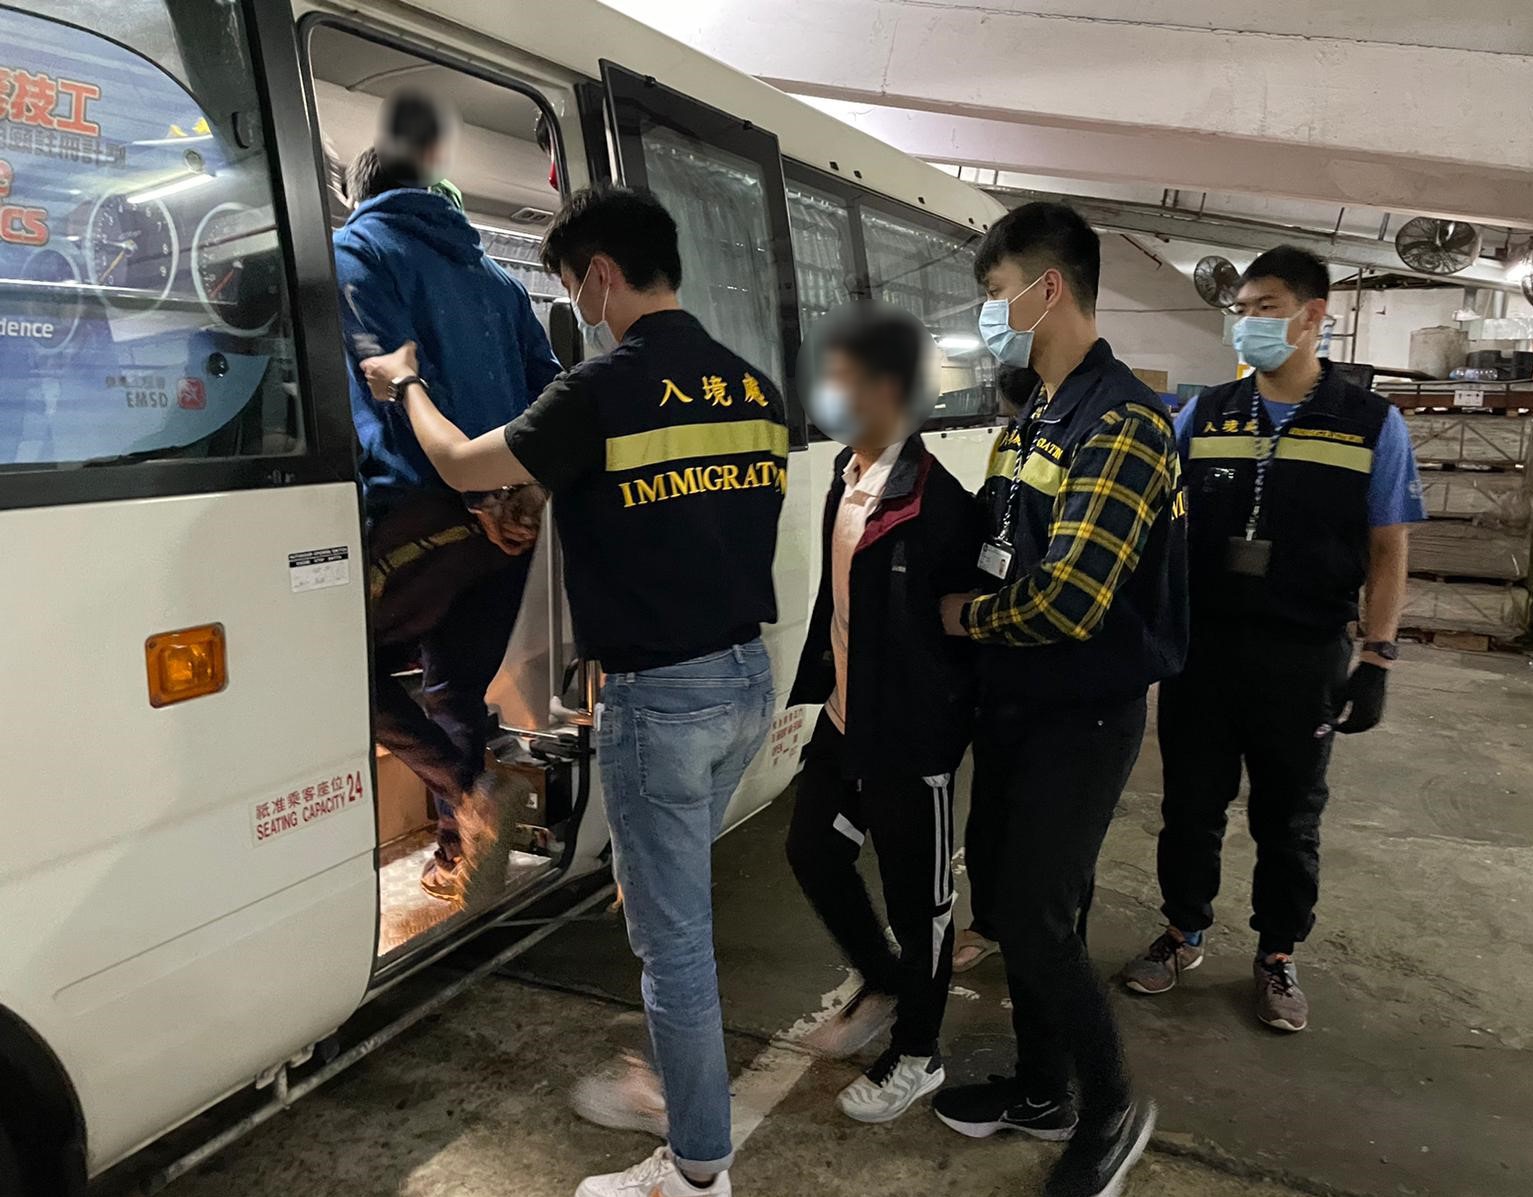 入境處打擊黑工行動搜查洗衣工場 按摩店等31處拘15人 香港01 社會新聞